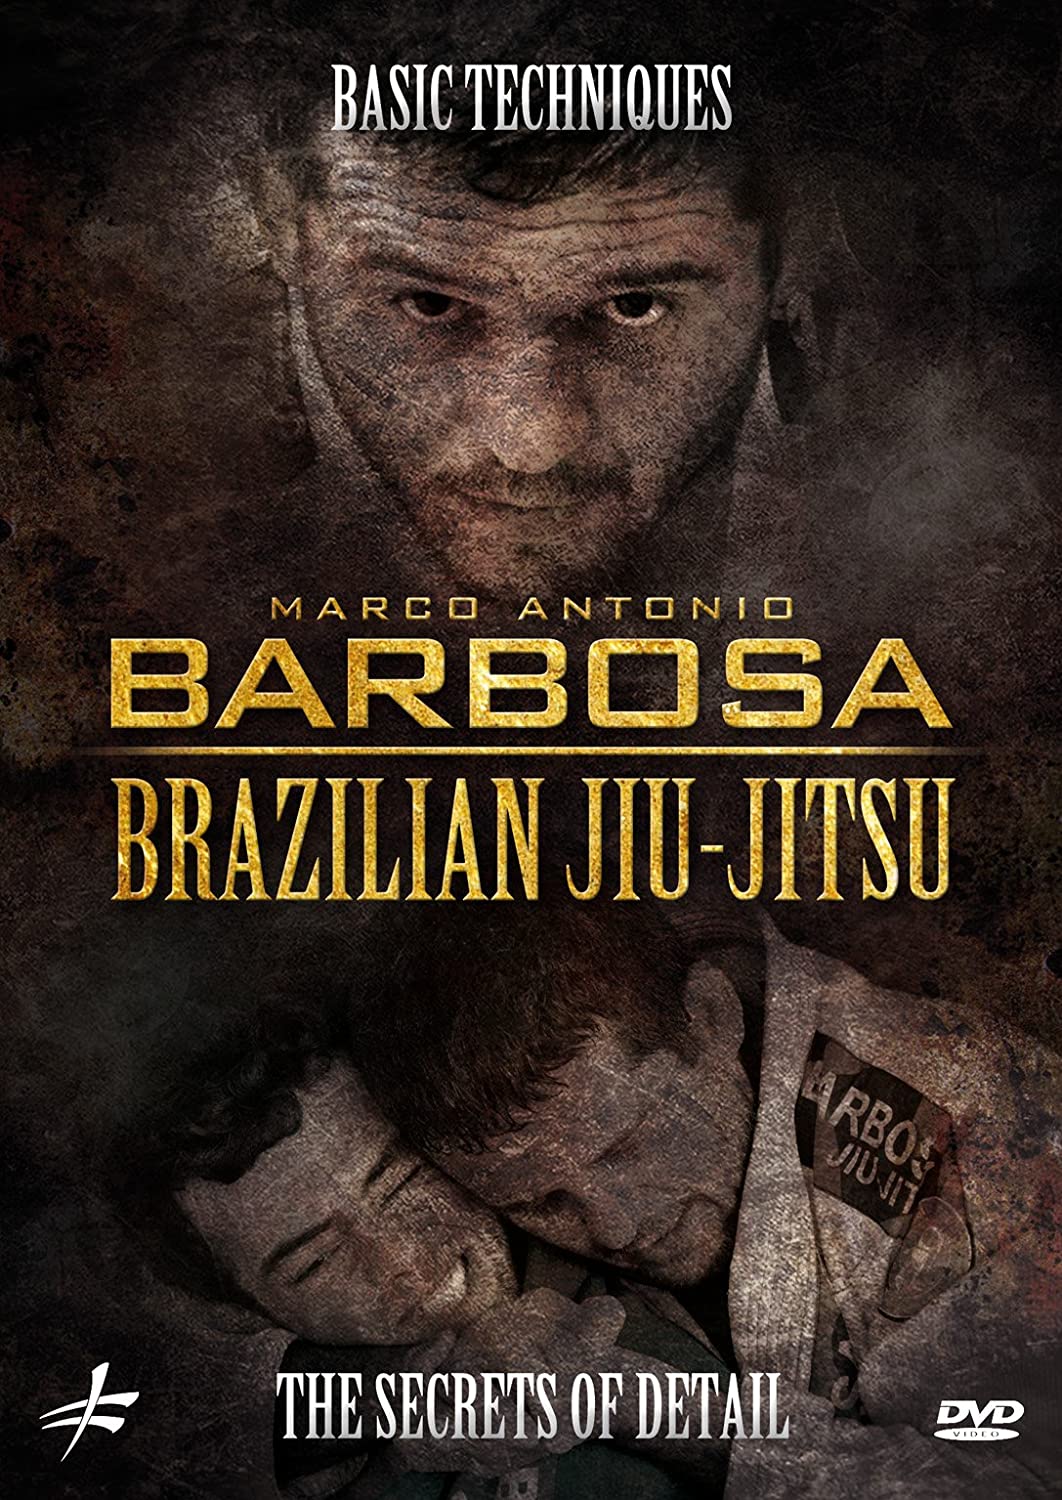 DVD de detalles secretos de técnicas básicas de BJJ de Marco Antonio Barbosa 